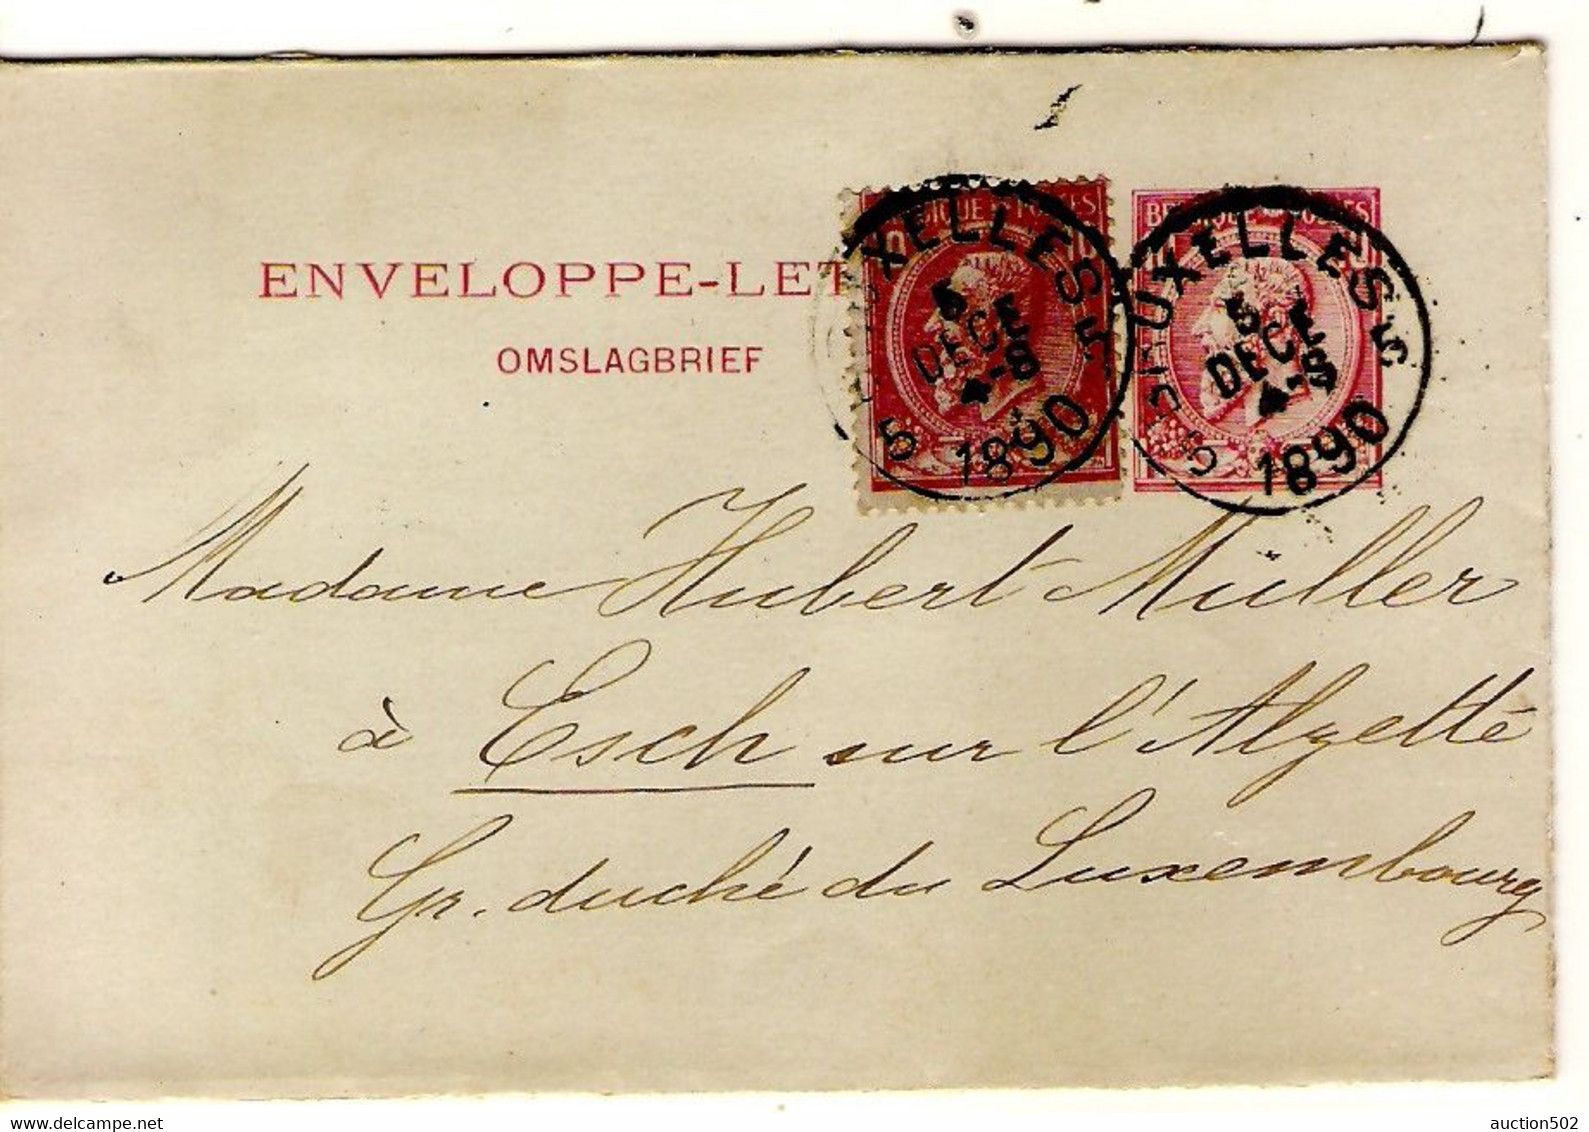 1802PR/ Entier Enveloppe-Lettre N°1 + TP 46 Tarif Préférentiel Obl. Bruxelles 1890 > Gd Duché Esch Via Luxembourg Ville - Enveloppes-lettres